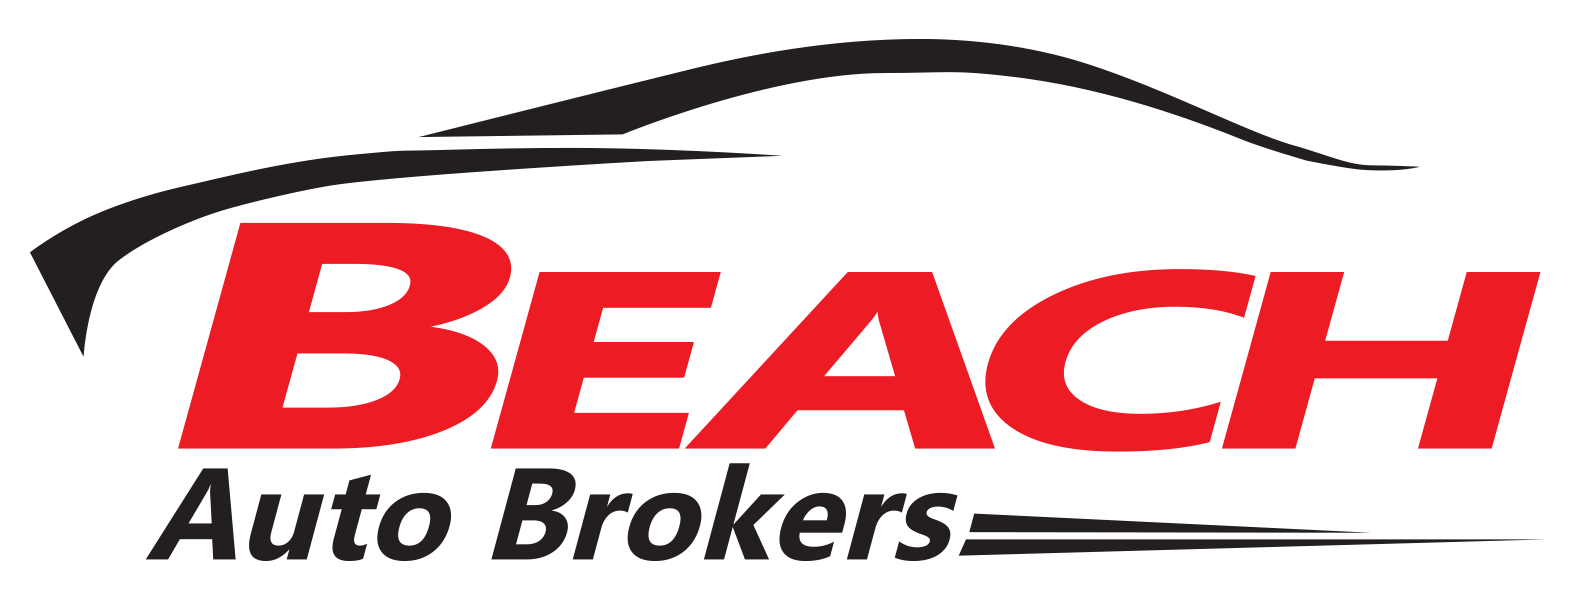 Used Car Sales Logo - Car Dealer Design Logo Png Image